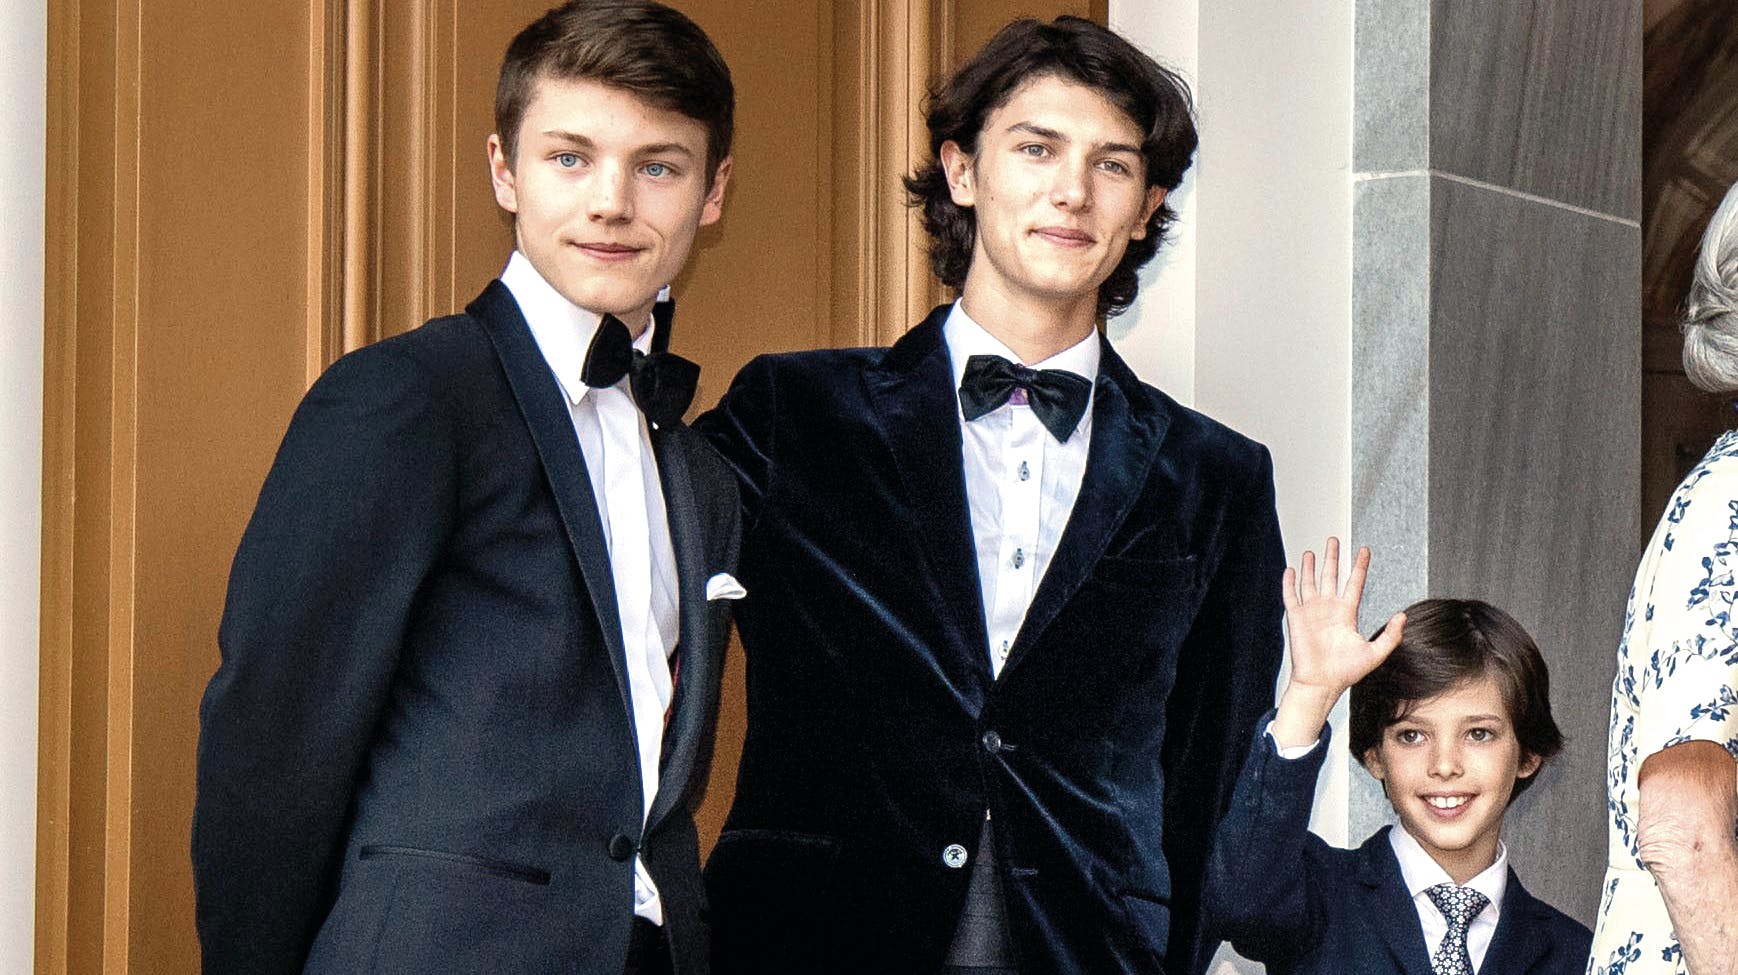 På årets fjerde dag – 4. januar 2023 – hedder Felix og Nikolai ikke længere prinser på deres arbejdsplads. nbsp;